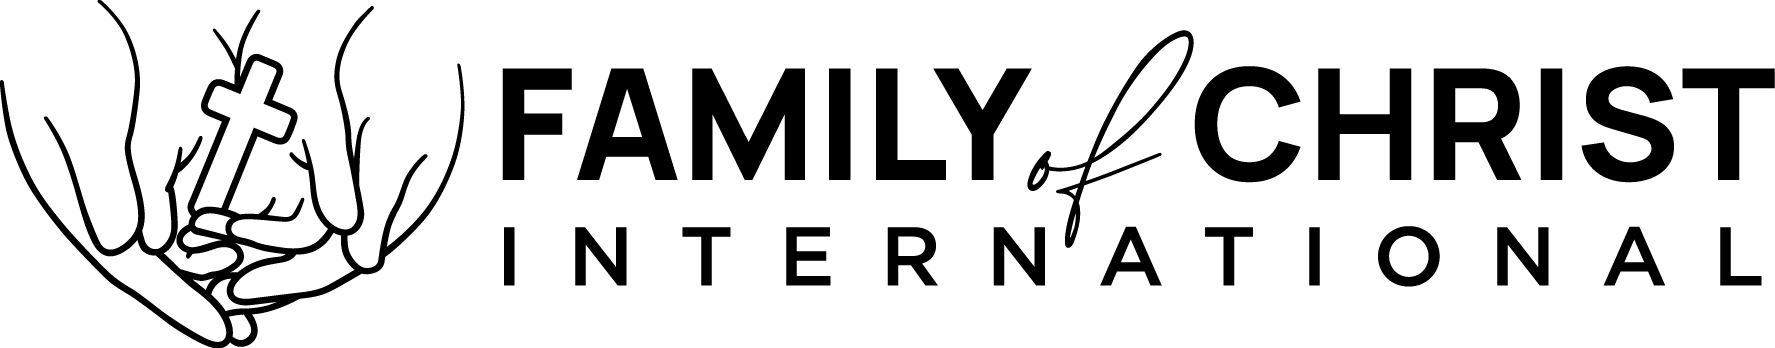 Family of Christ International Logo - Black